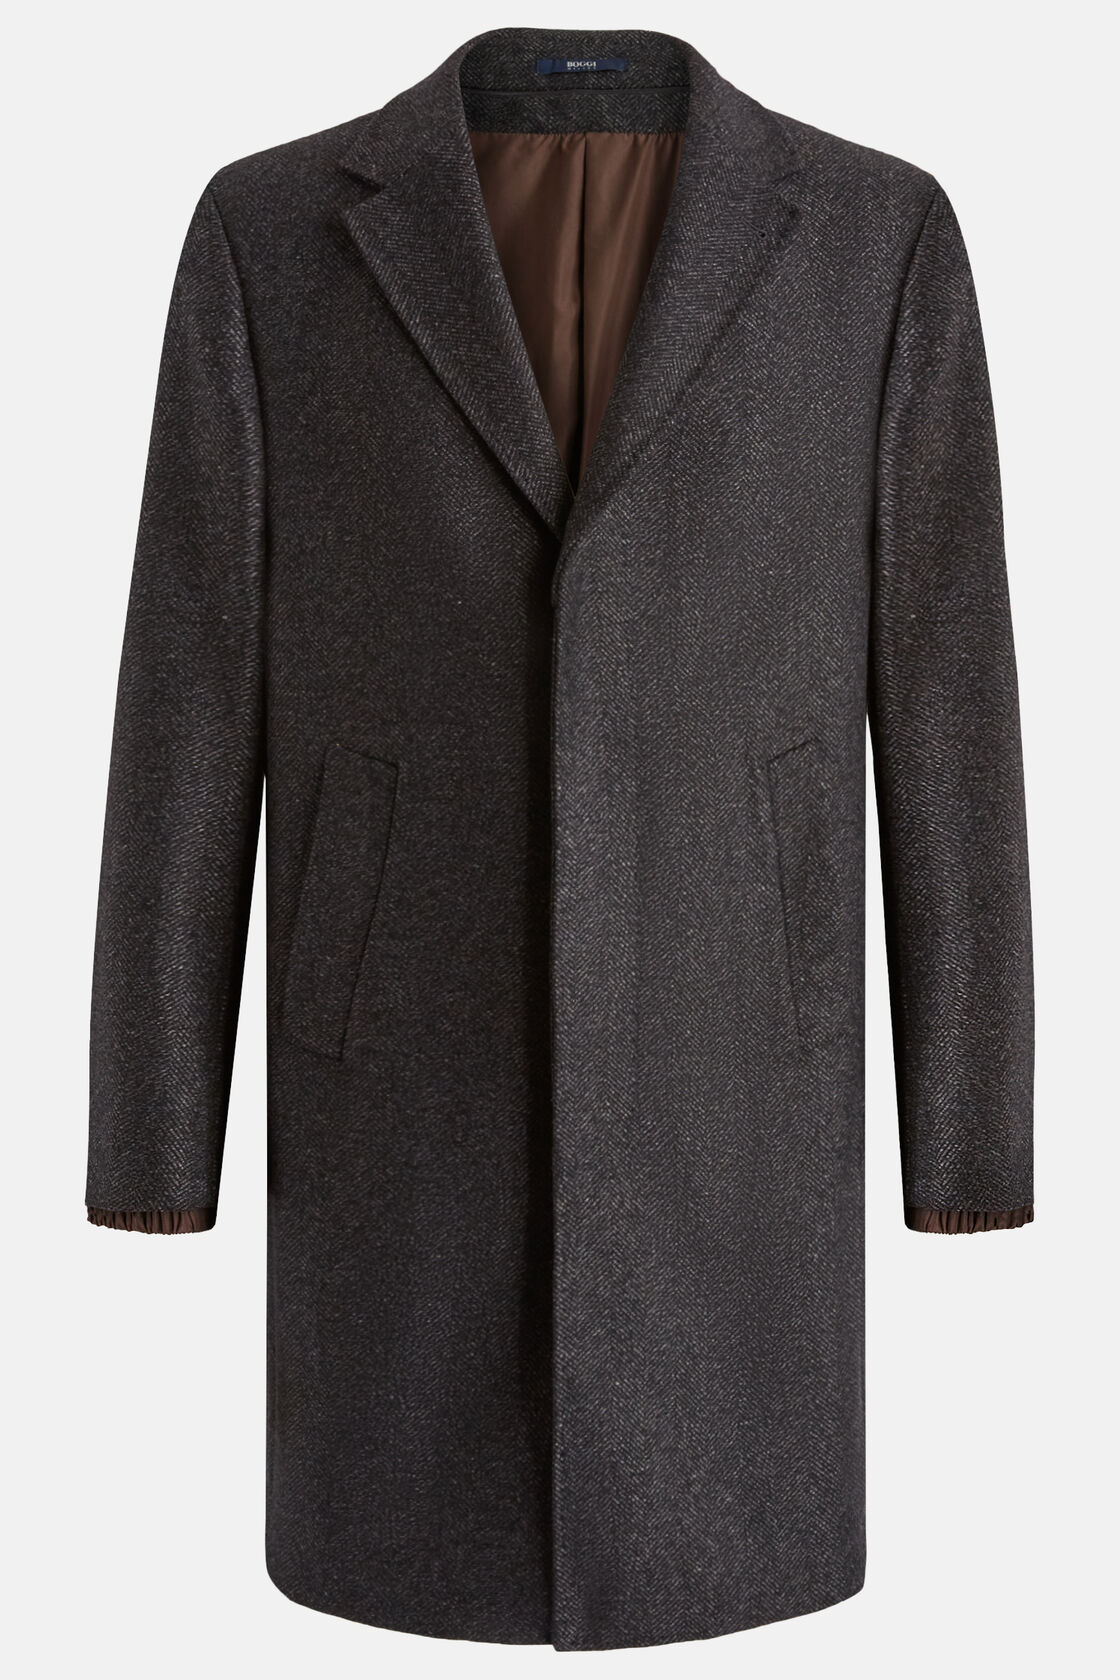 Wool Coat With Concealed Hood, Grey, hi-res